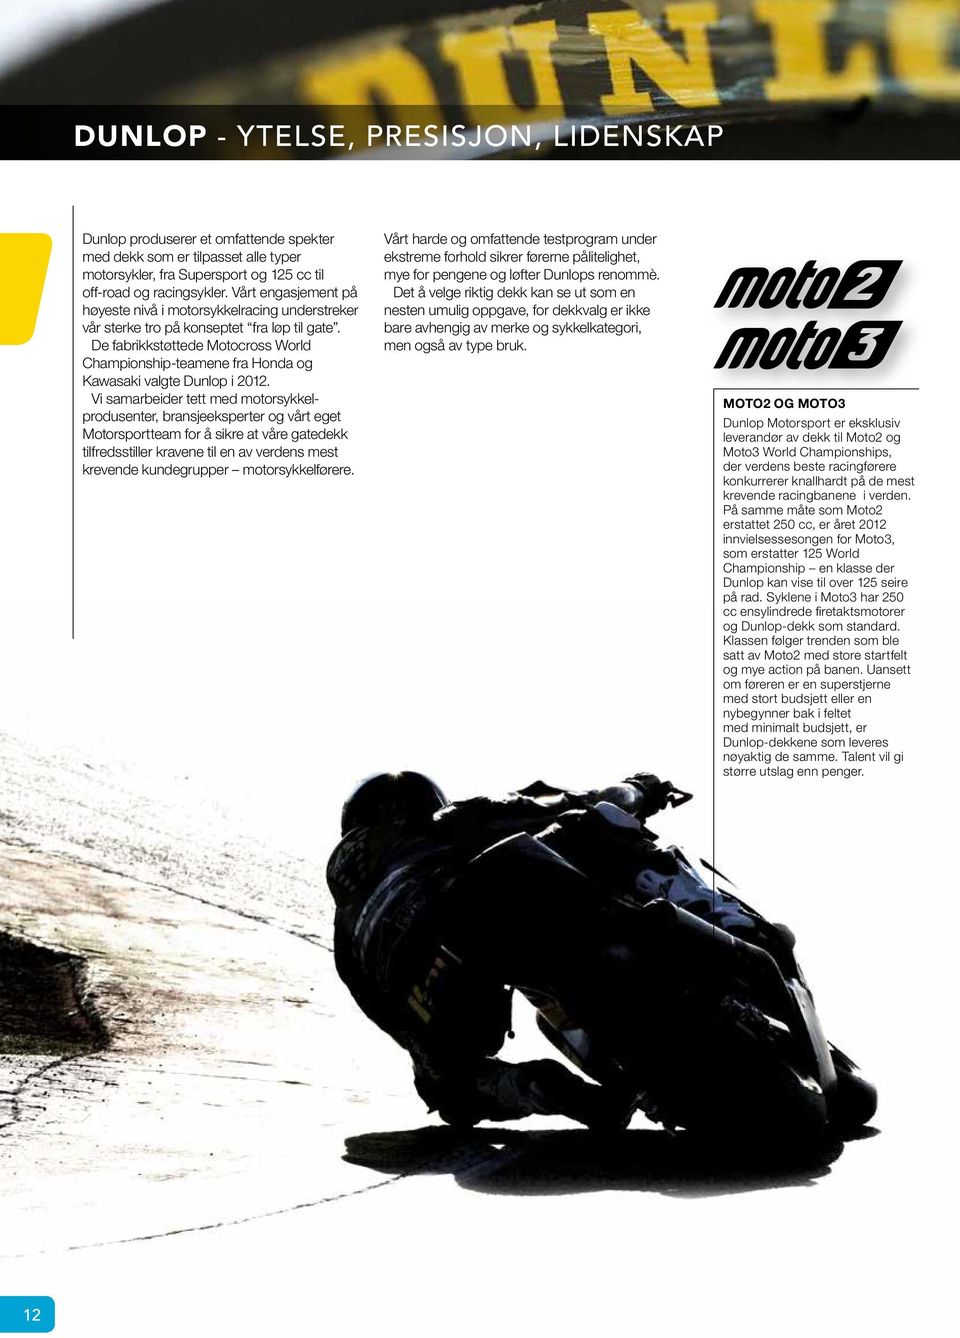 De fabrikkstøttede Motocross World Championship-teamene fra Honda og Kawasaki valgte Dunlop i 2012.